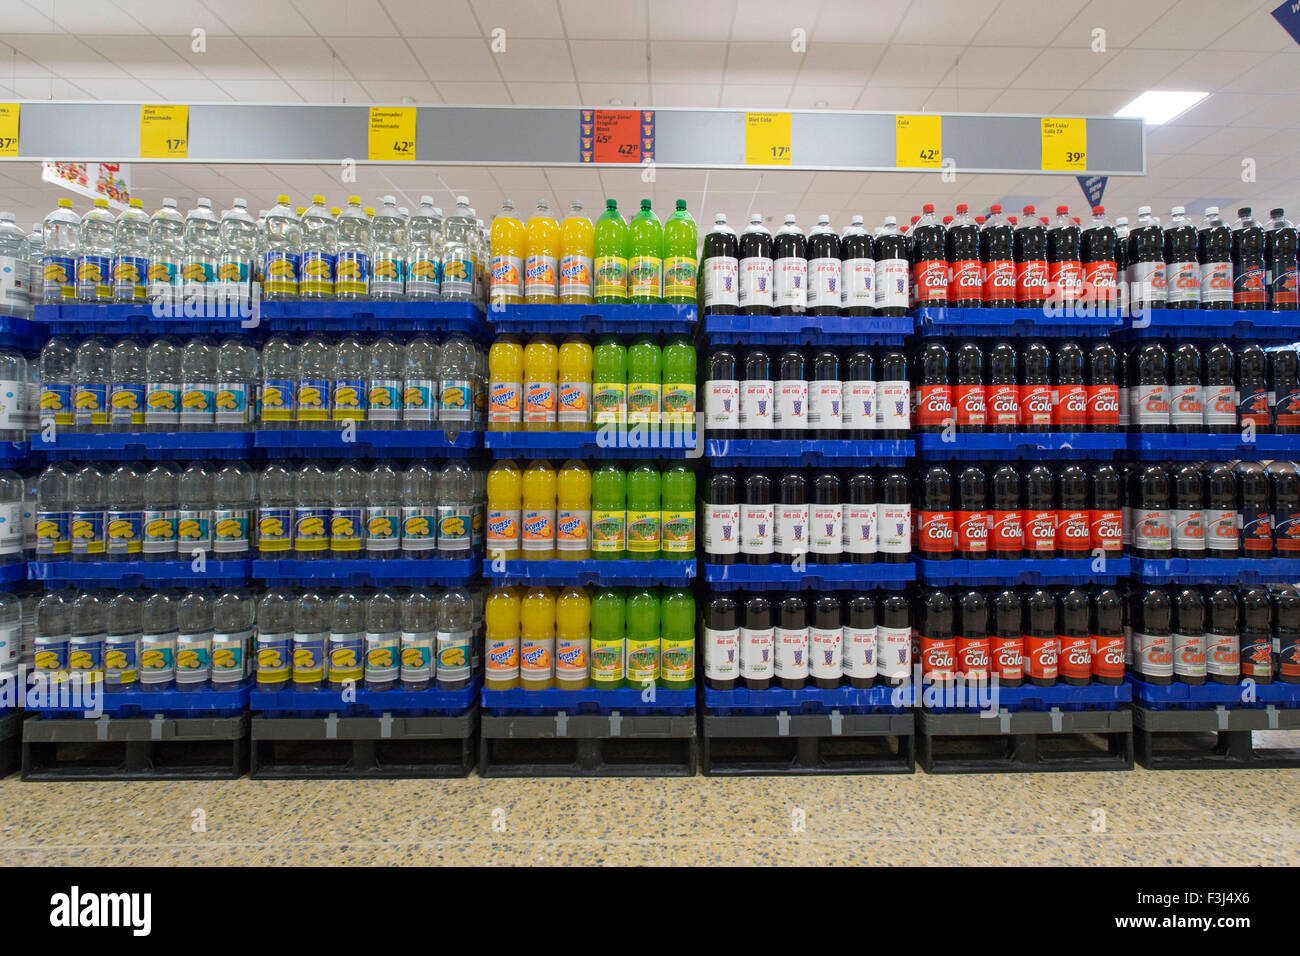 Kohlensäurehaltige Getränke zum Verkauf in einem Supermarkt. Kohlensäurehaltige Getränke verursachen Karies und Diabetes. Stockfoto